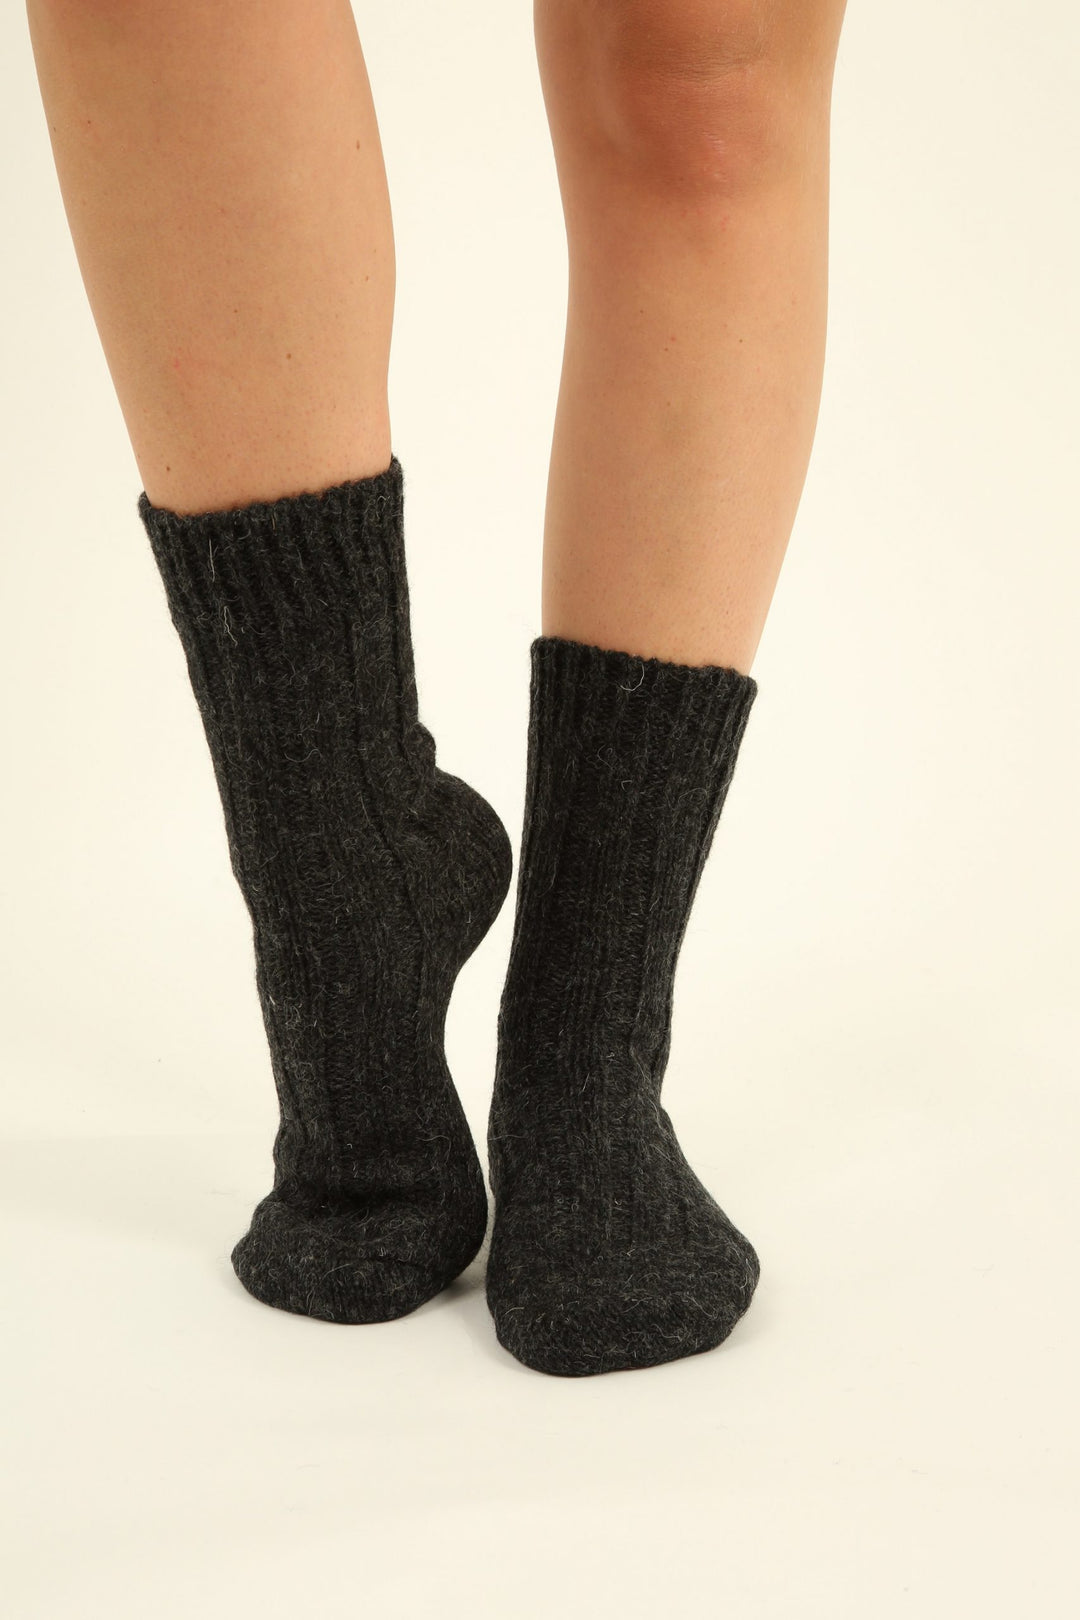 Socken aus 100% Schurwolle - anthrazit - hergestellt in Deutschland - 2 Paar